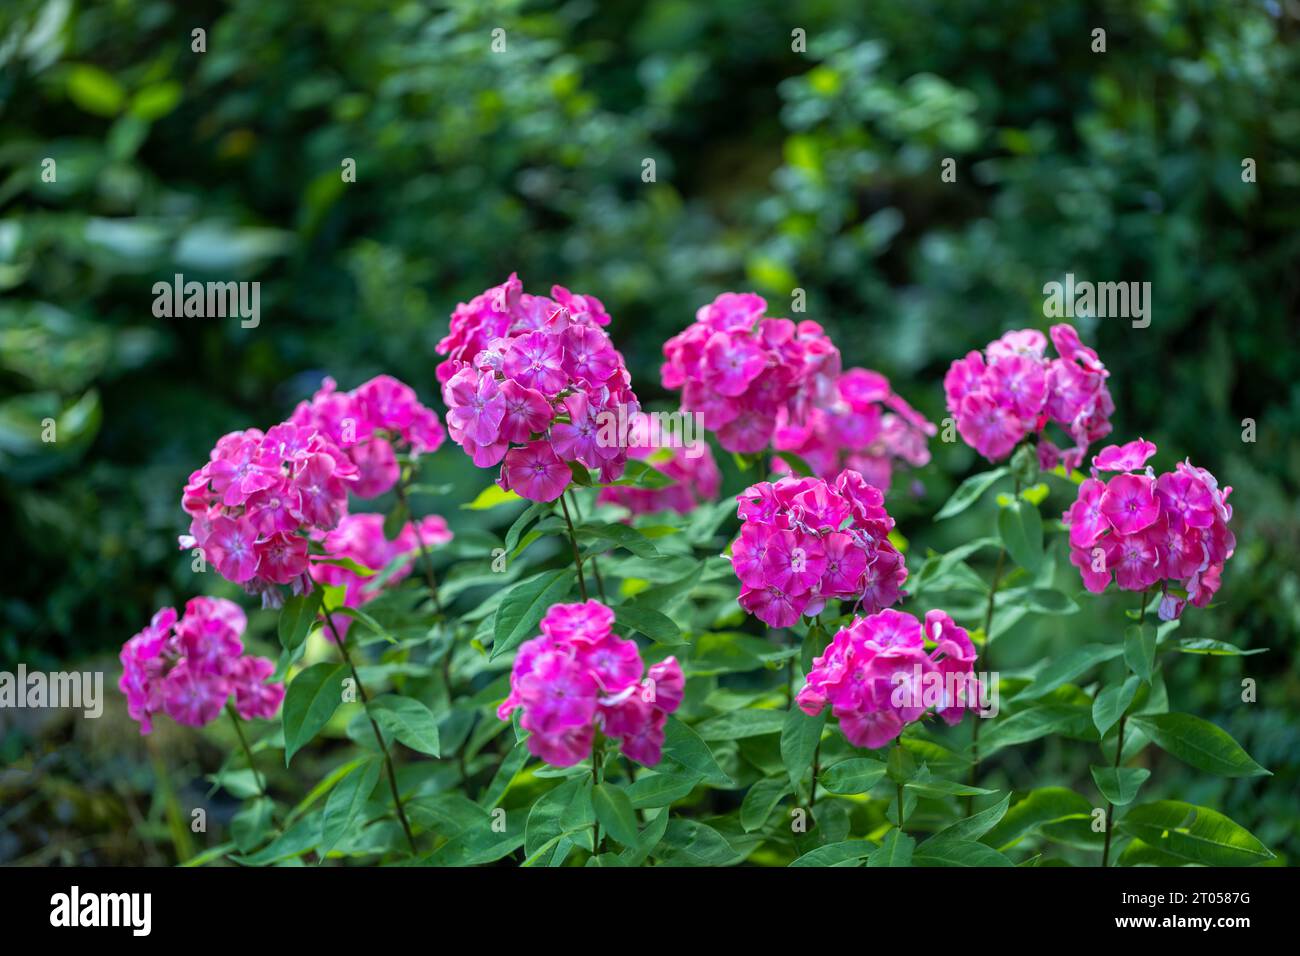 Phlox paniculata (garden phlox), a blooming flower. Stock Photo